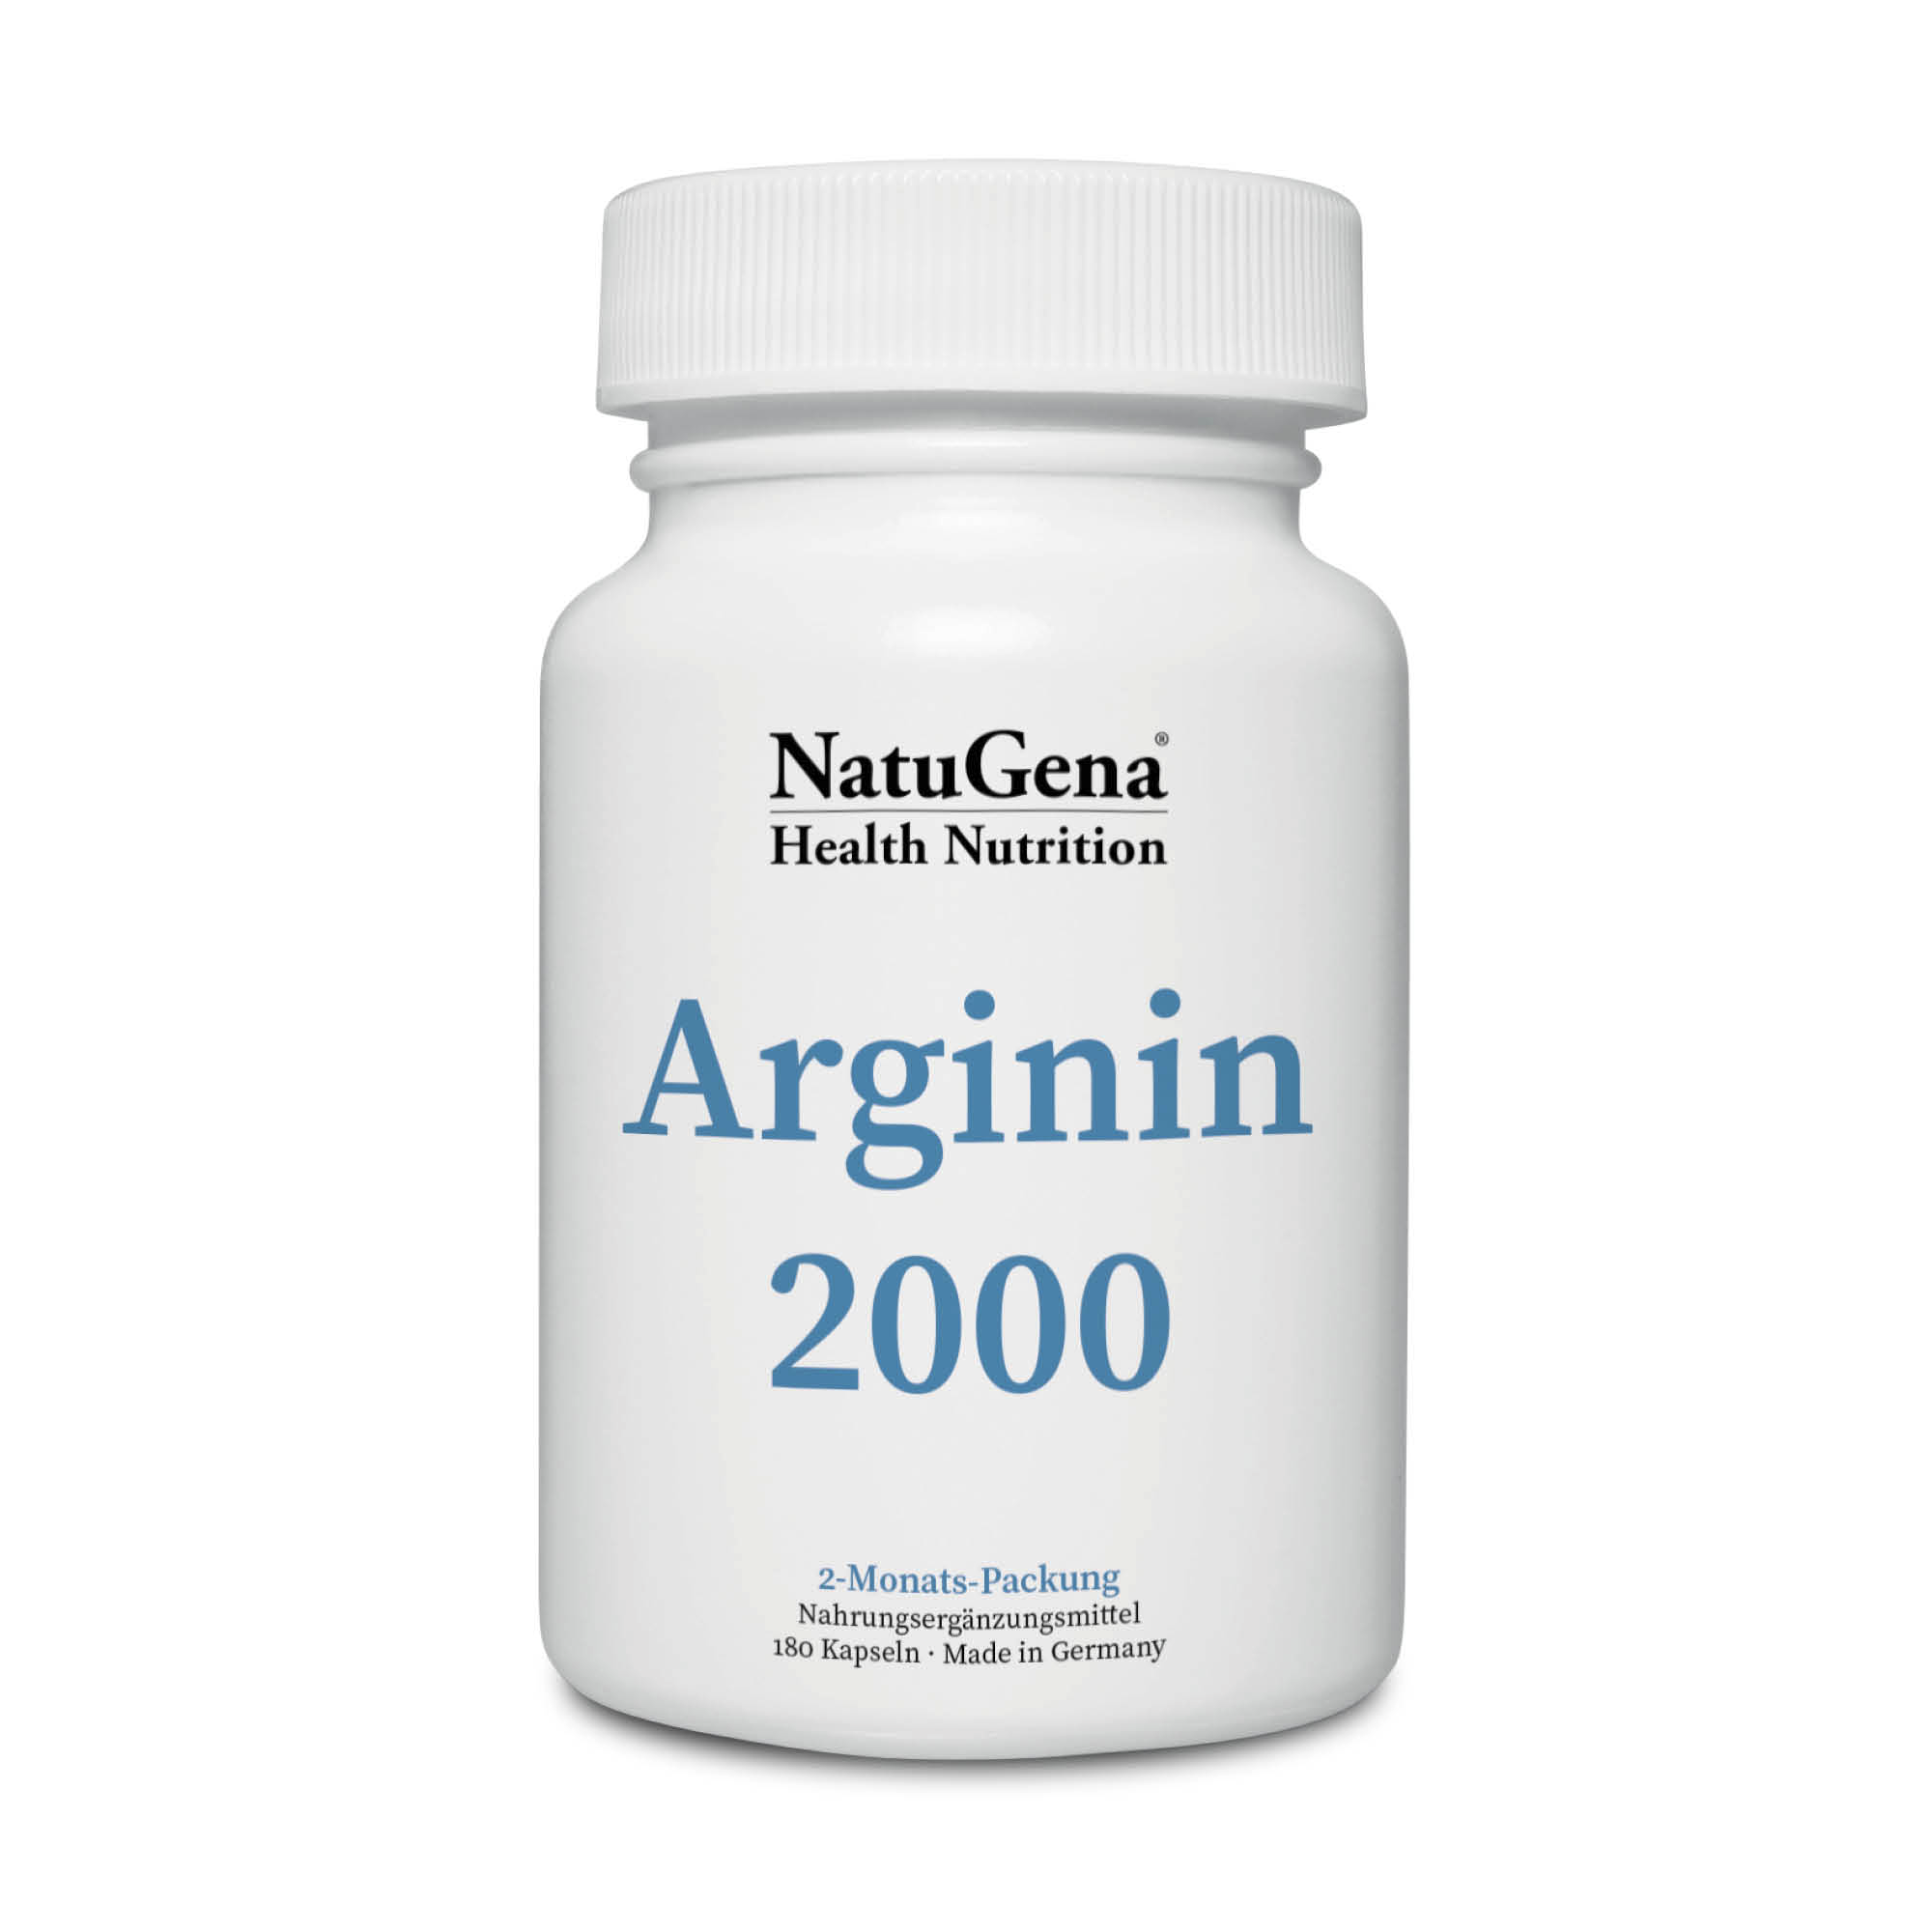 NatuGena Arginin 2000 | 180 Kapseln - Hochdosiertes L-Arginin Supplement für gesteigerten Bedarf und optimale NO-Verfügbarkeit